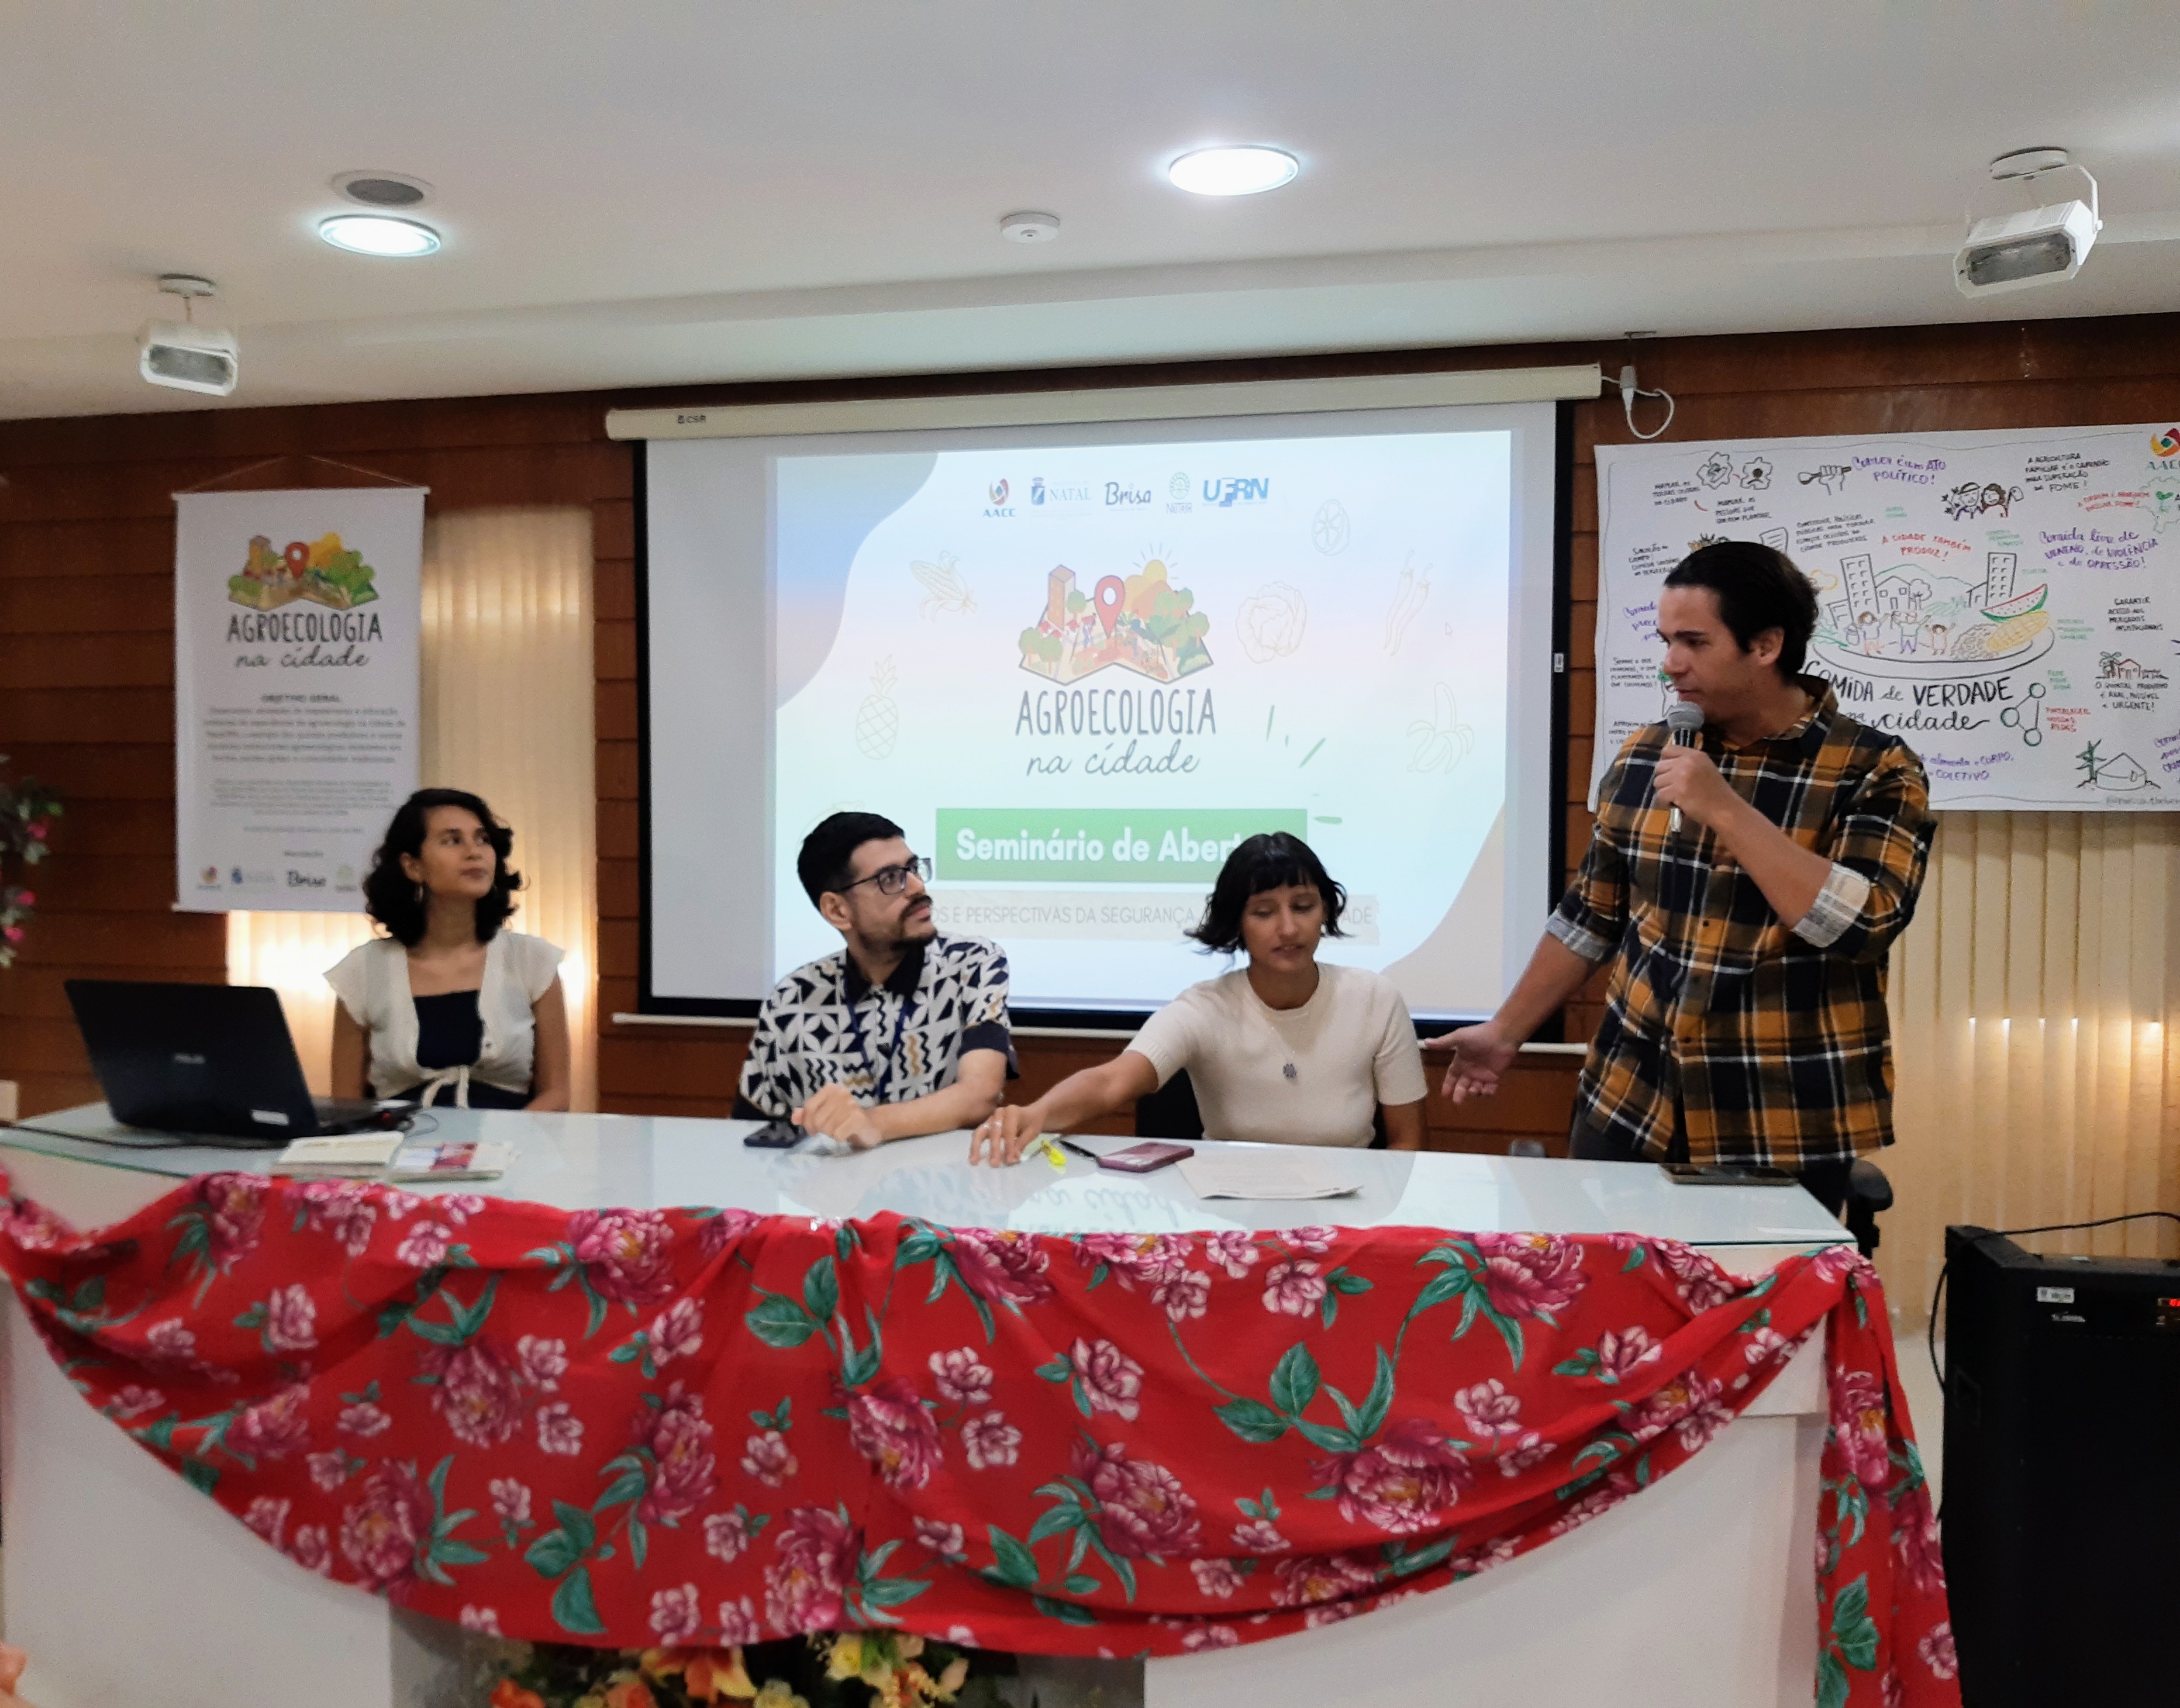 Seminário "Desafios e Perspectivas da Segurança Alimentar" lança projeto Agroecologia da Cidade